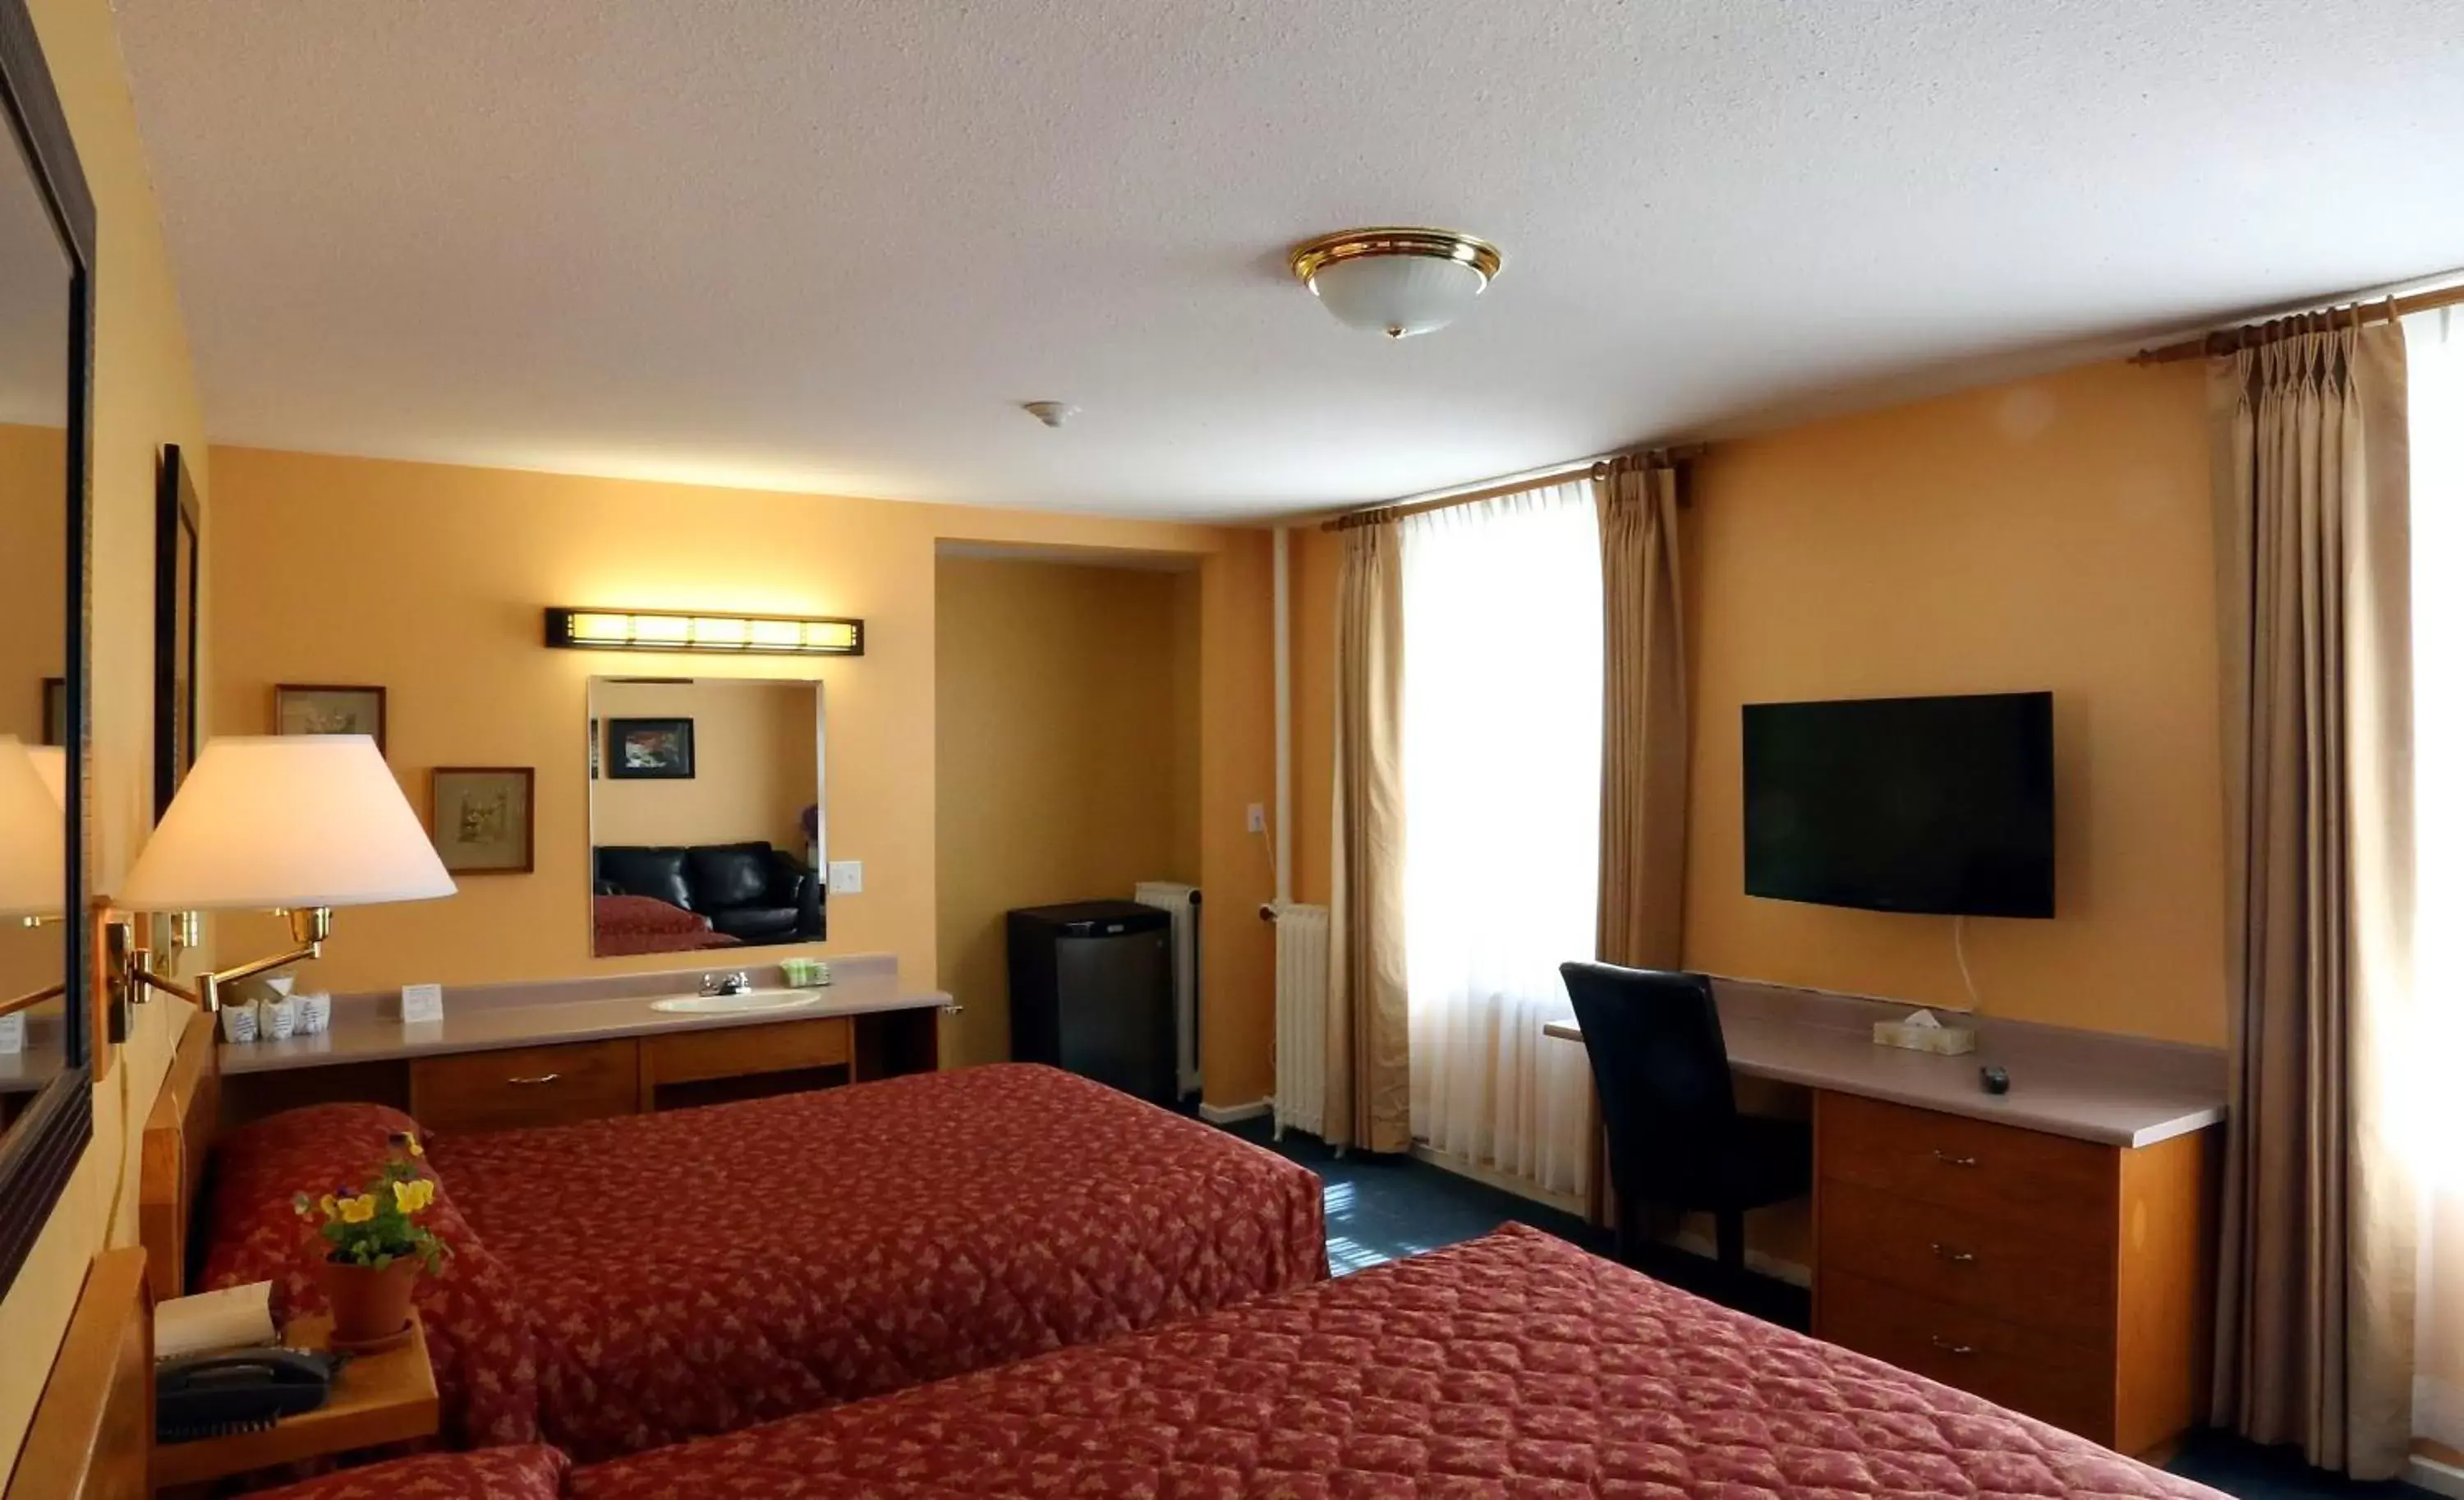 Bedroom, Bed in James Bay Inn Hotel, Suites & Cottage